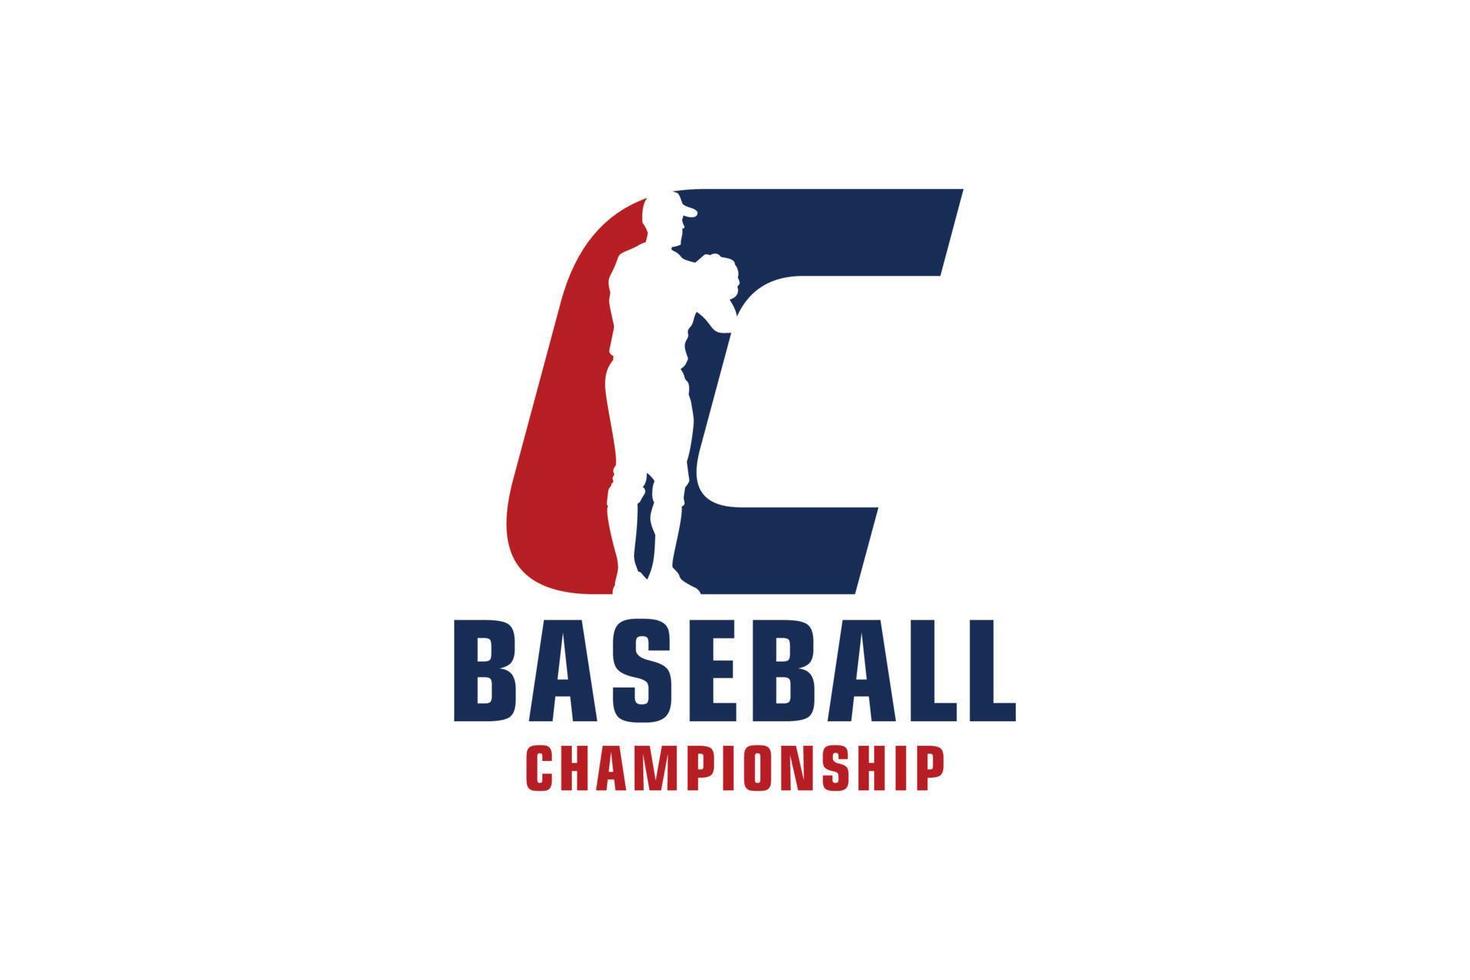 Buchstabe c mit Baseball-Logo-Design. Vektordesign-Vorlagenelemente für Sportteams oder Corporate Identity. vektor